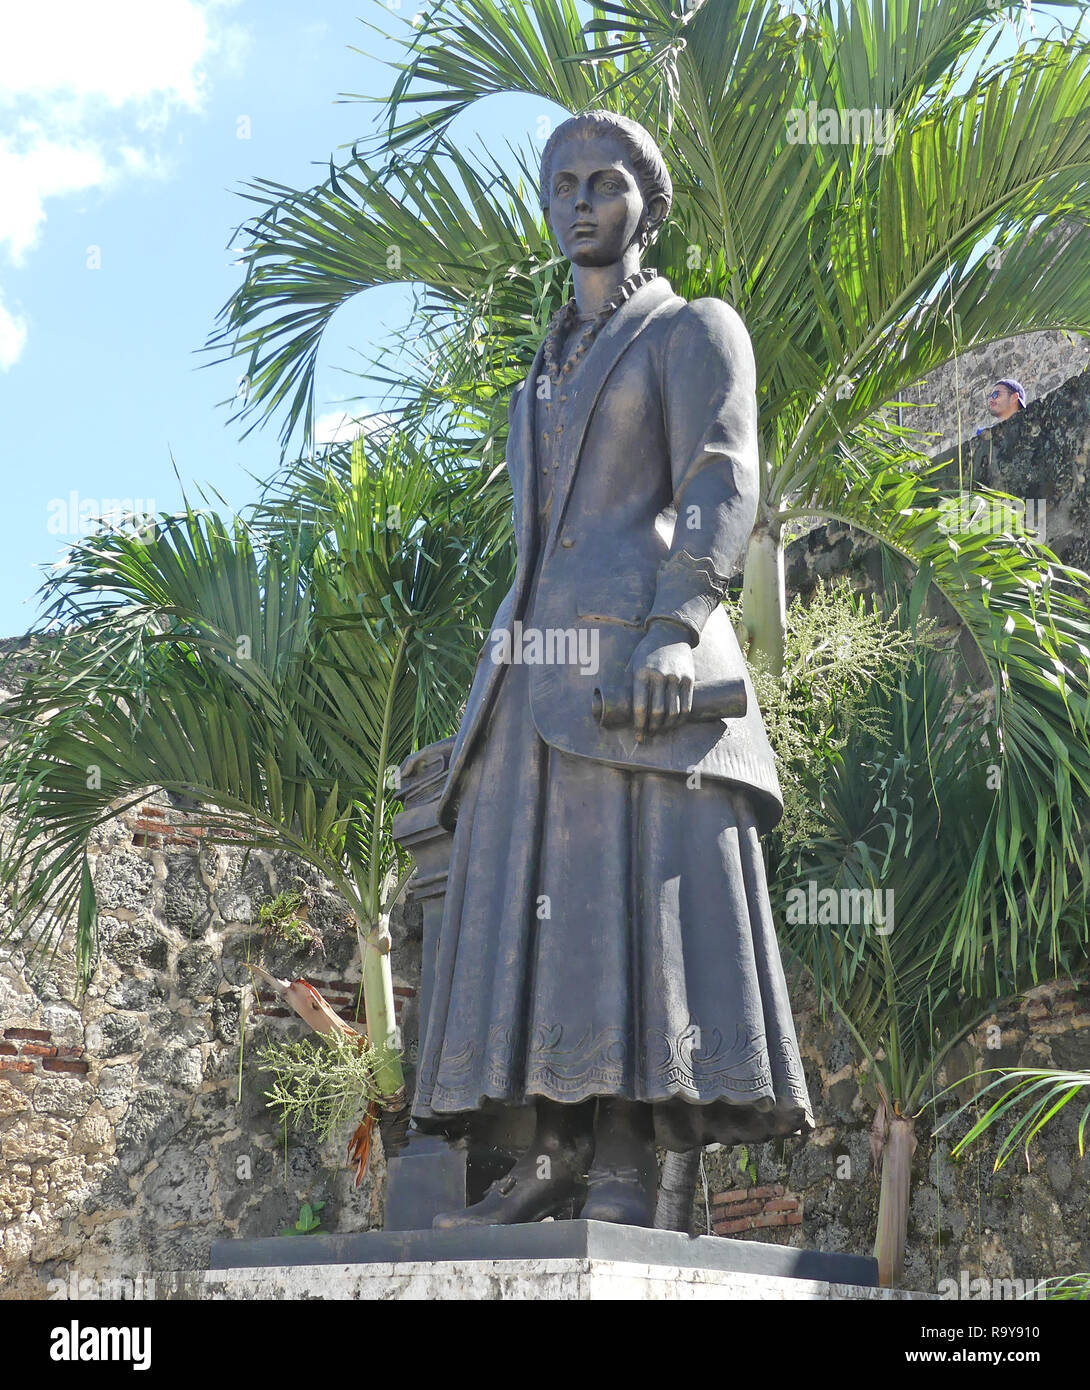 SALOMÉ UREÑA (1850-1898) Statue de la République dominicaine et de l'éducation poète réformateur en Santo Domingo, République dominicaine. Photo : Tony Gale Banque D'Images